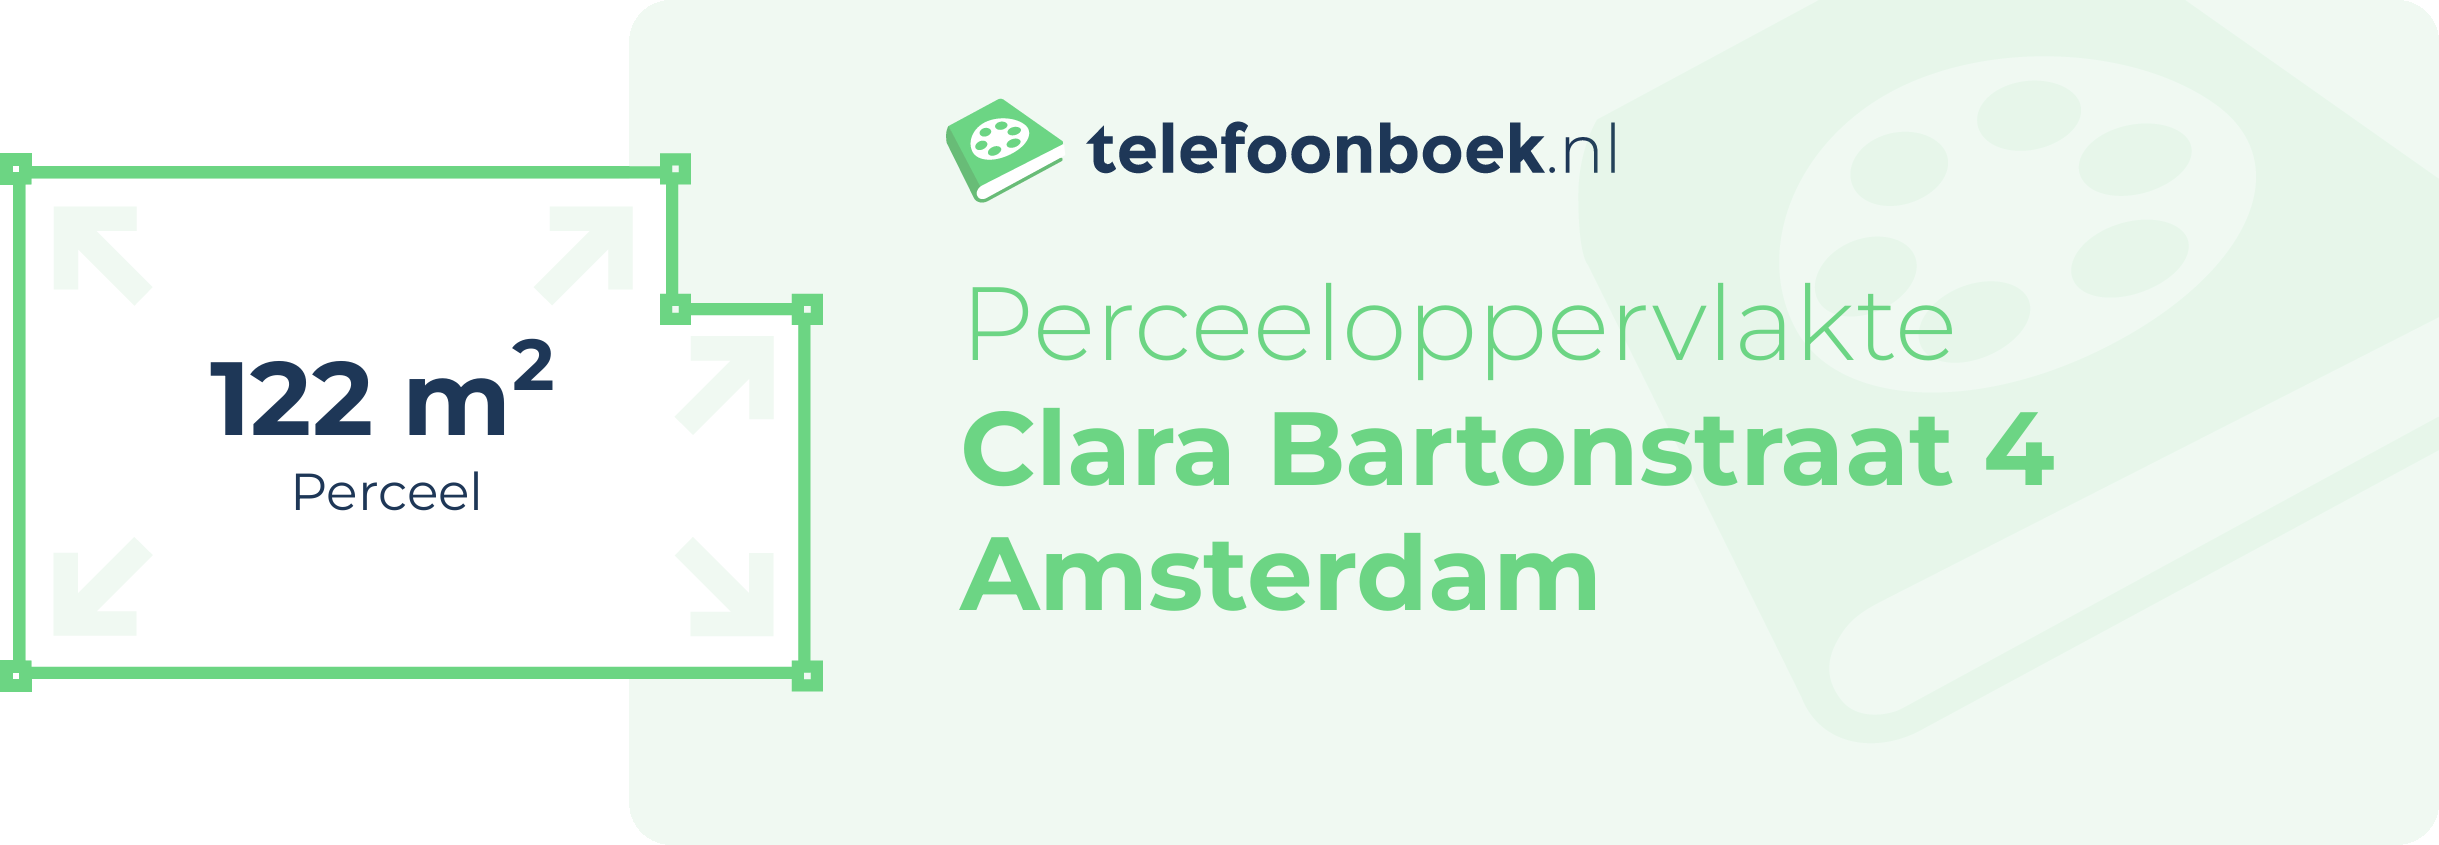 Perceeloppervlakte Clara Bartonstraat 4 Amsterdam